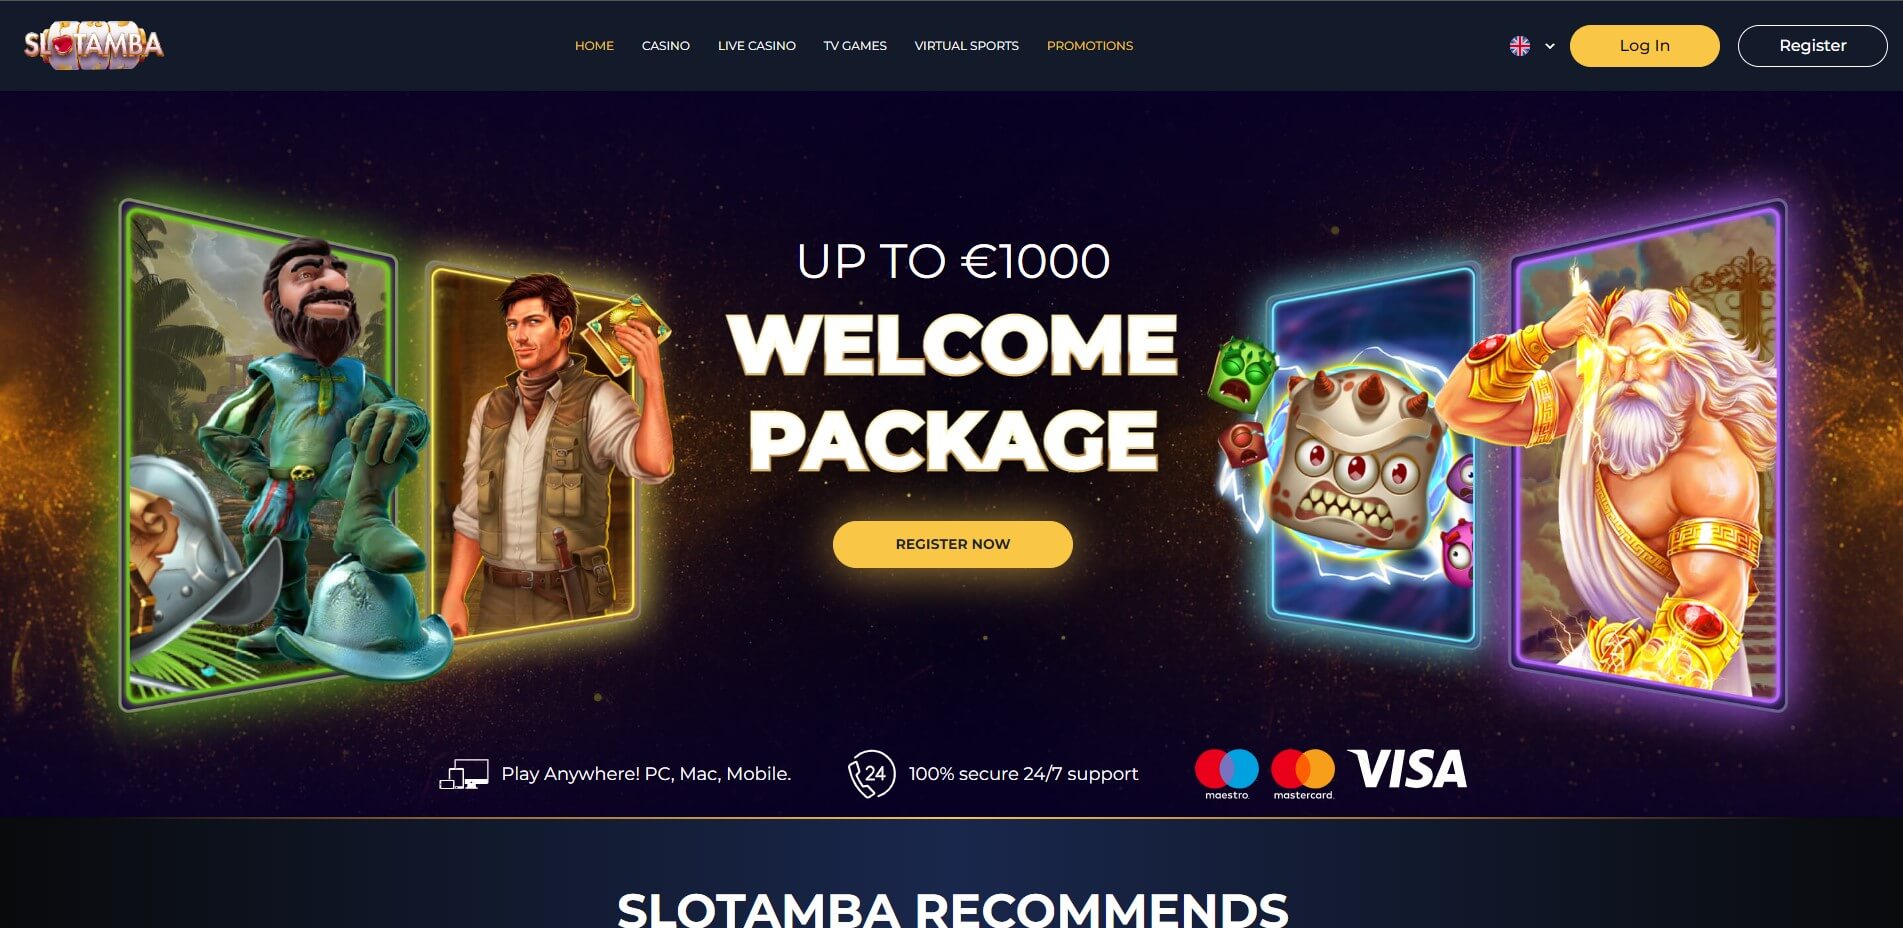 Slotamba Casino Review